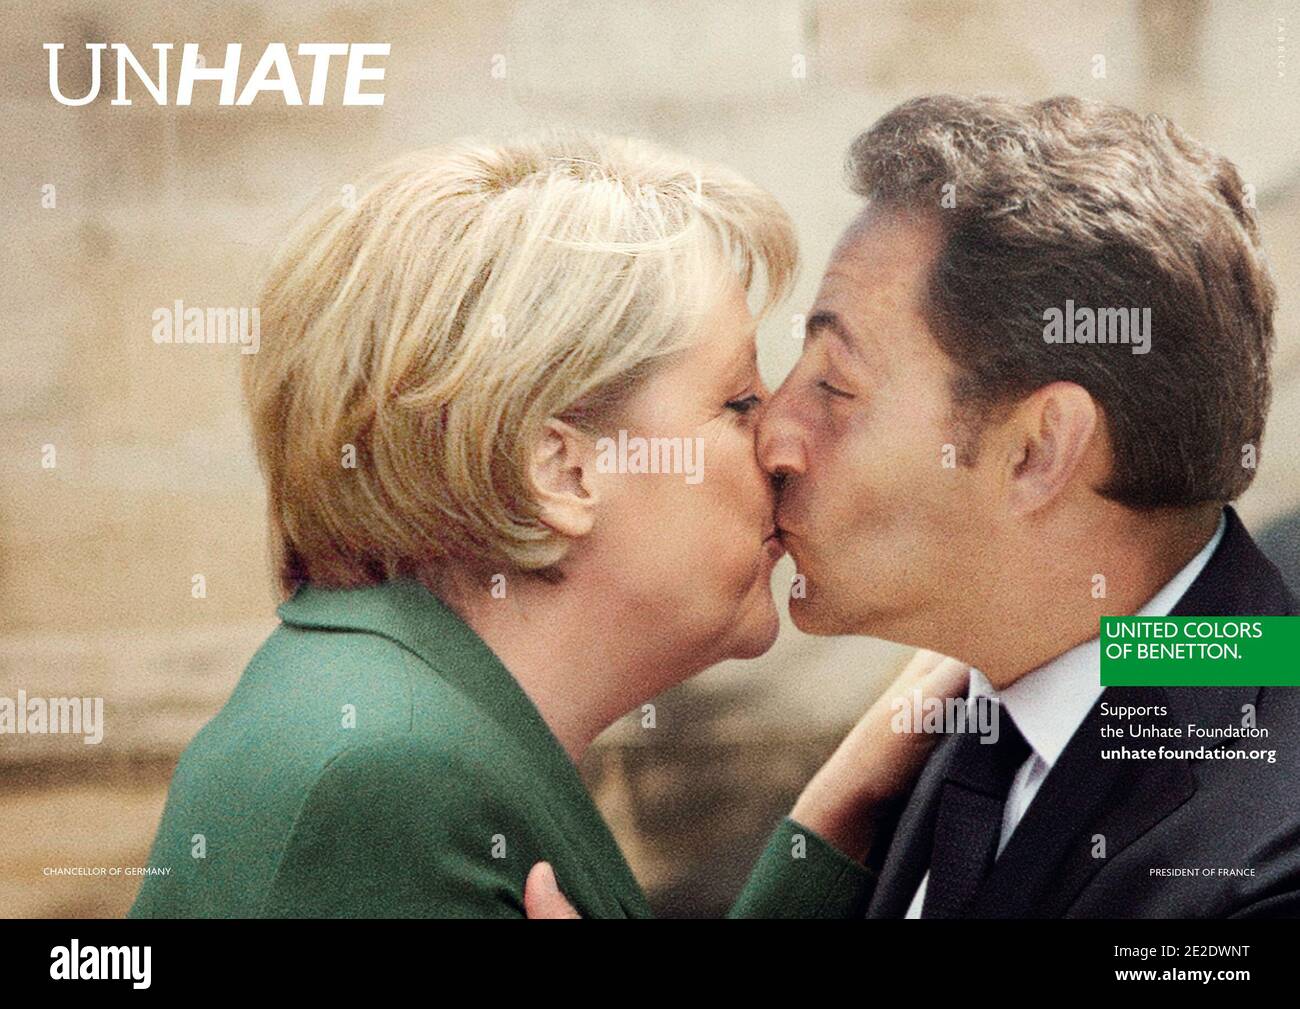 Imágenes de United Colors de la campaña Unhate de Benetton. La campaña  "invita a los líderes del mundo a combatir la "cultura del odio". El  campiang incluye imágenes rellenas, una de las